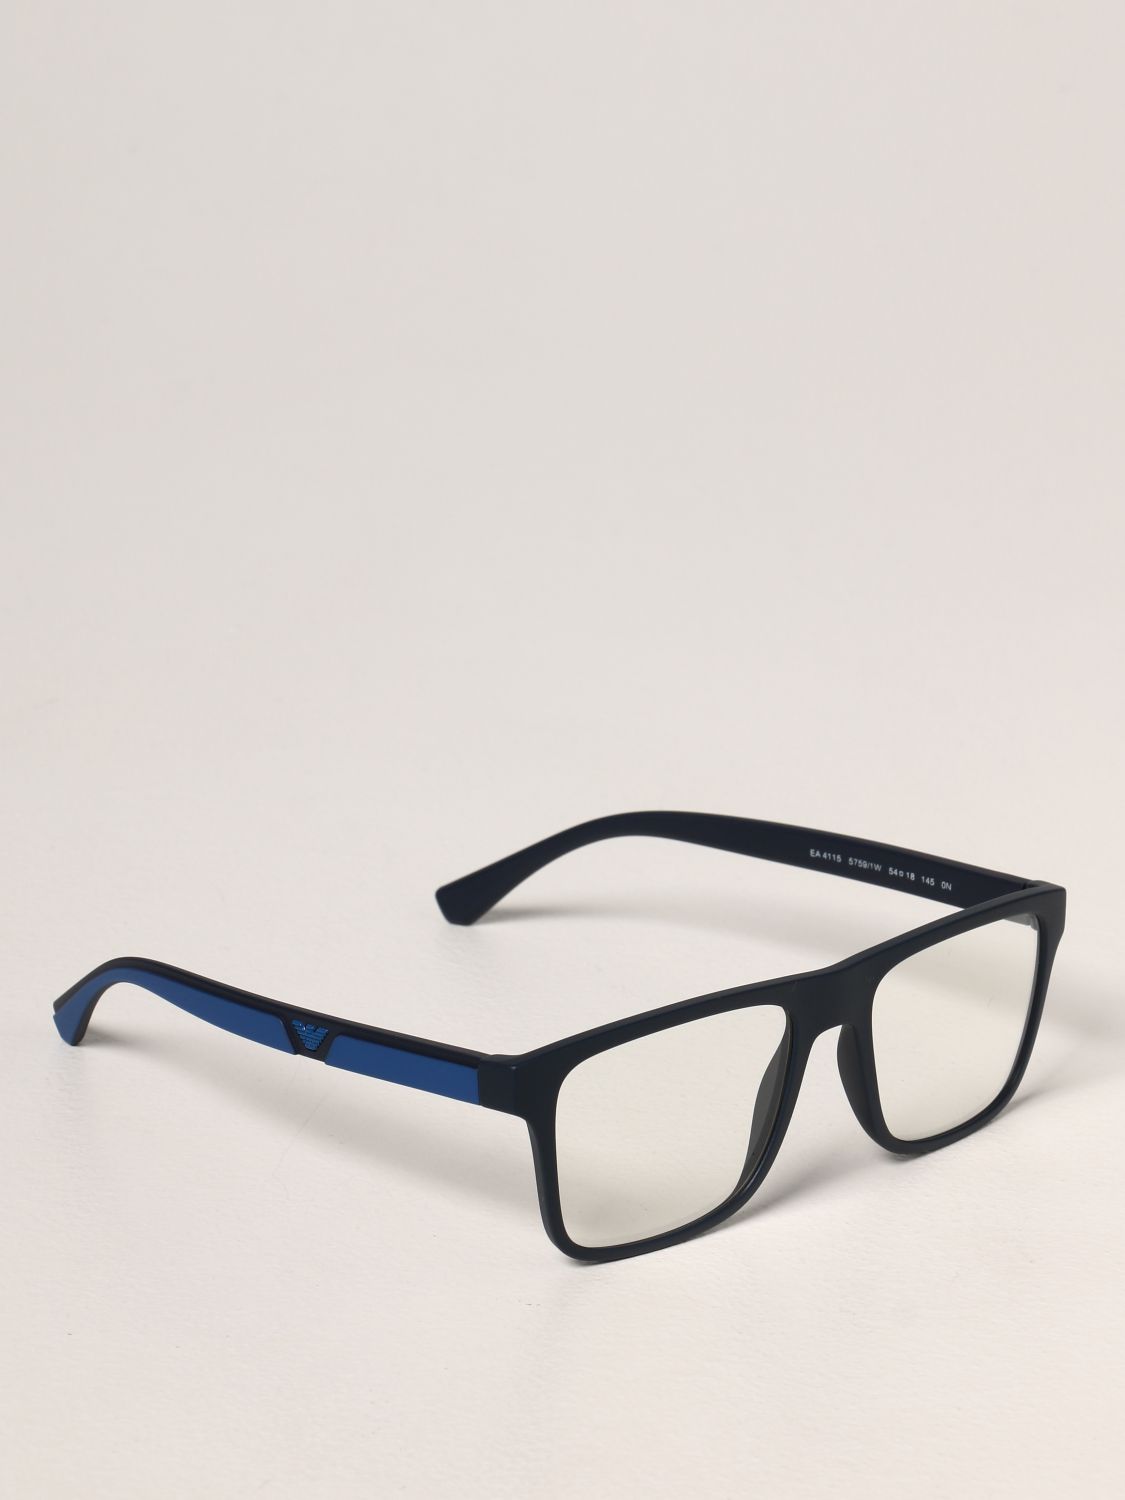 Emporio Armani EA4115 Men's Sunglasses for sale online | eBay